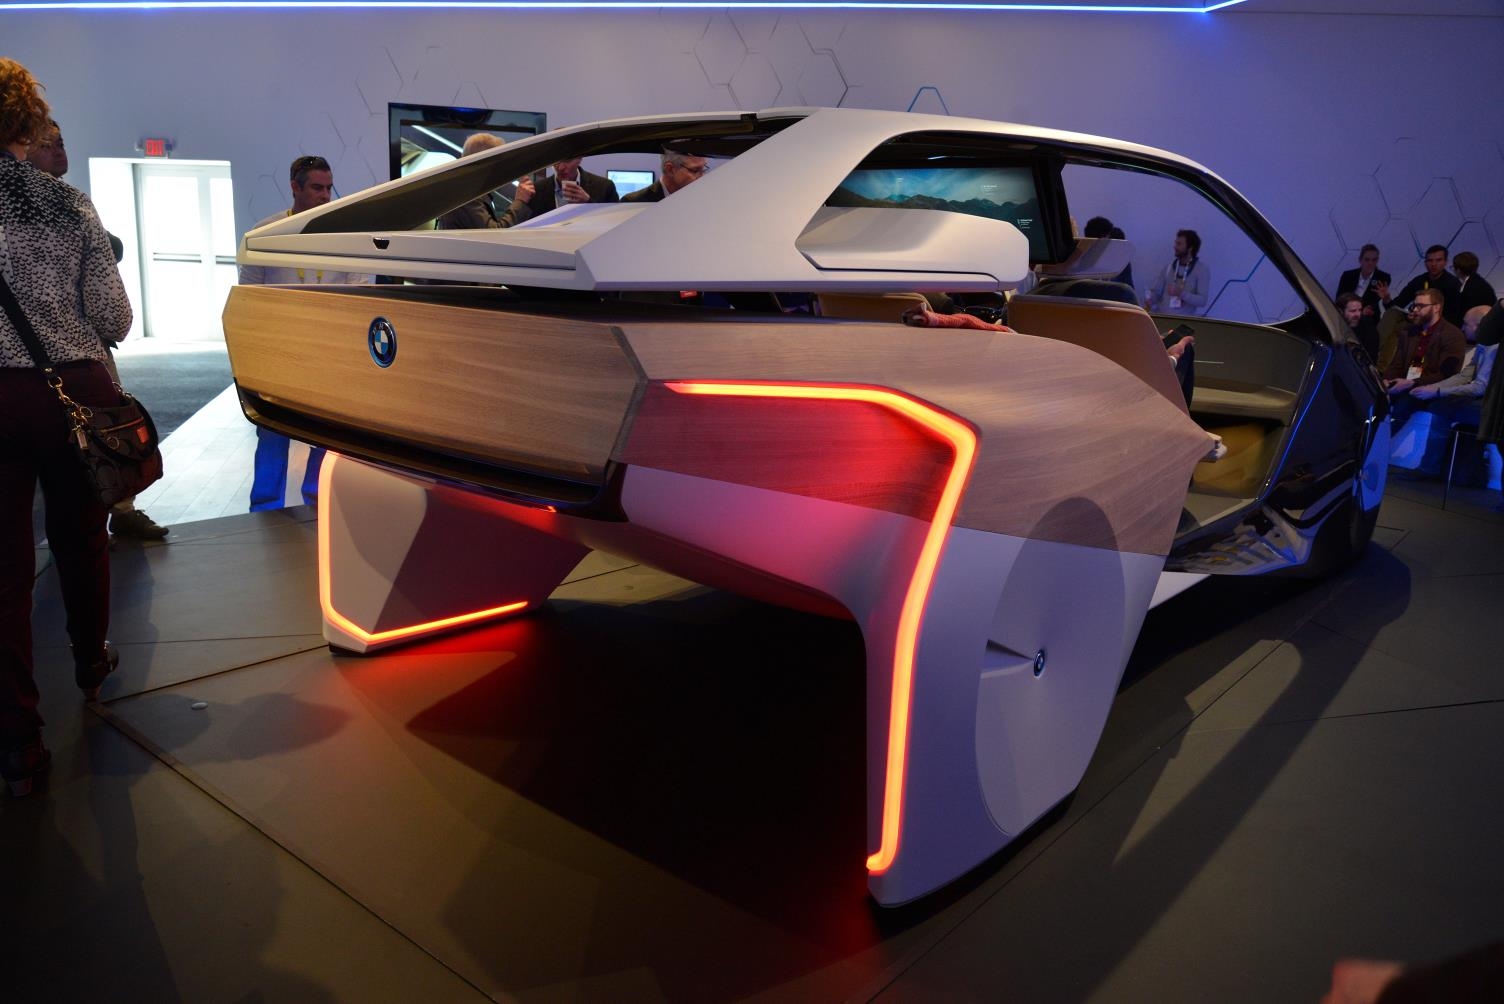 Инсайд машина. Ces 2017 БМВ. BMW I inside Future. BMW I Future Concept. Автомобильный концепт "Охта".